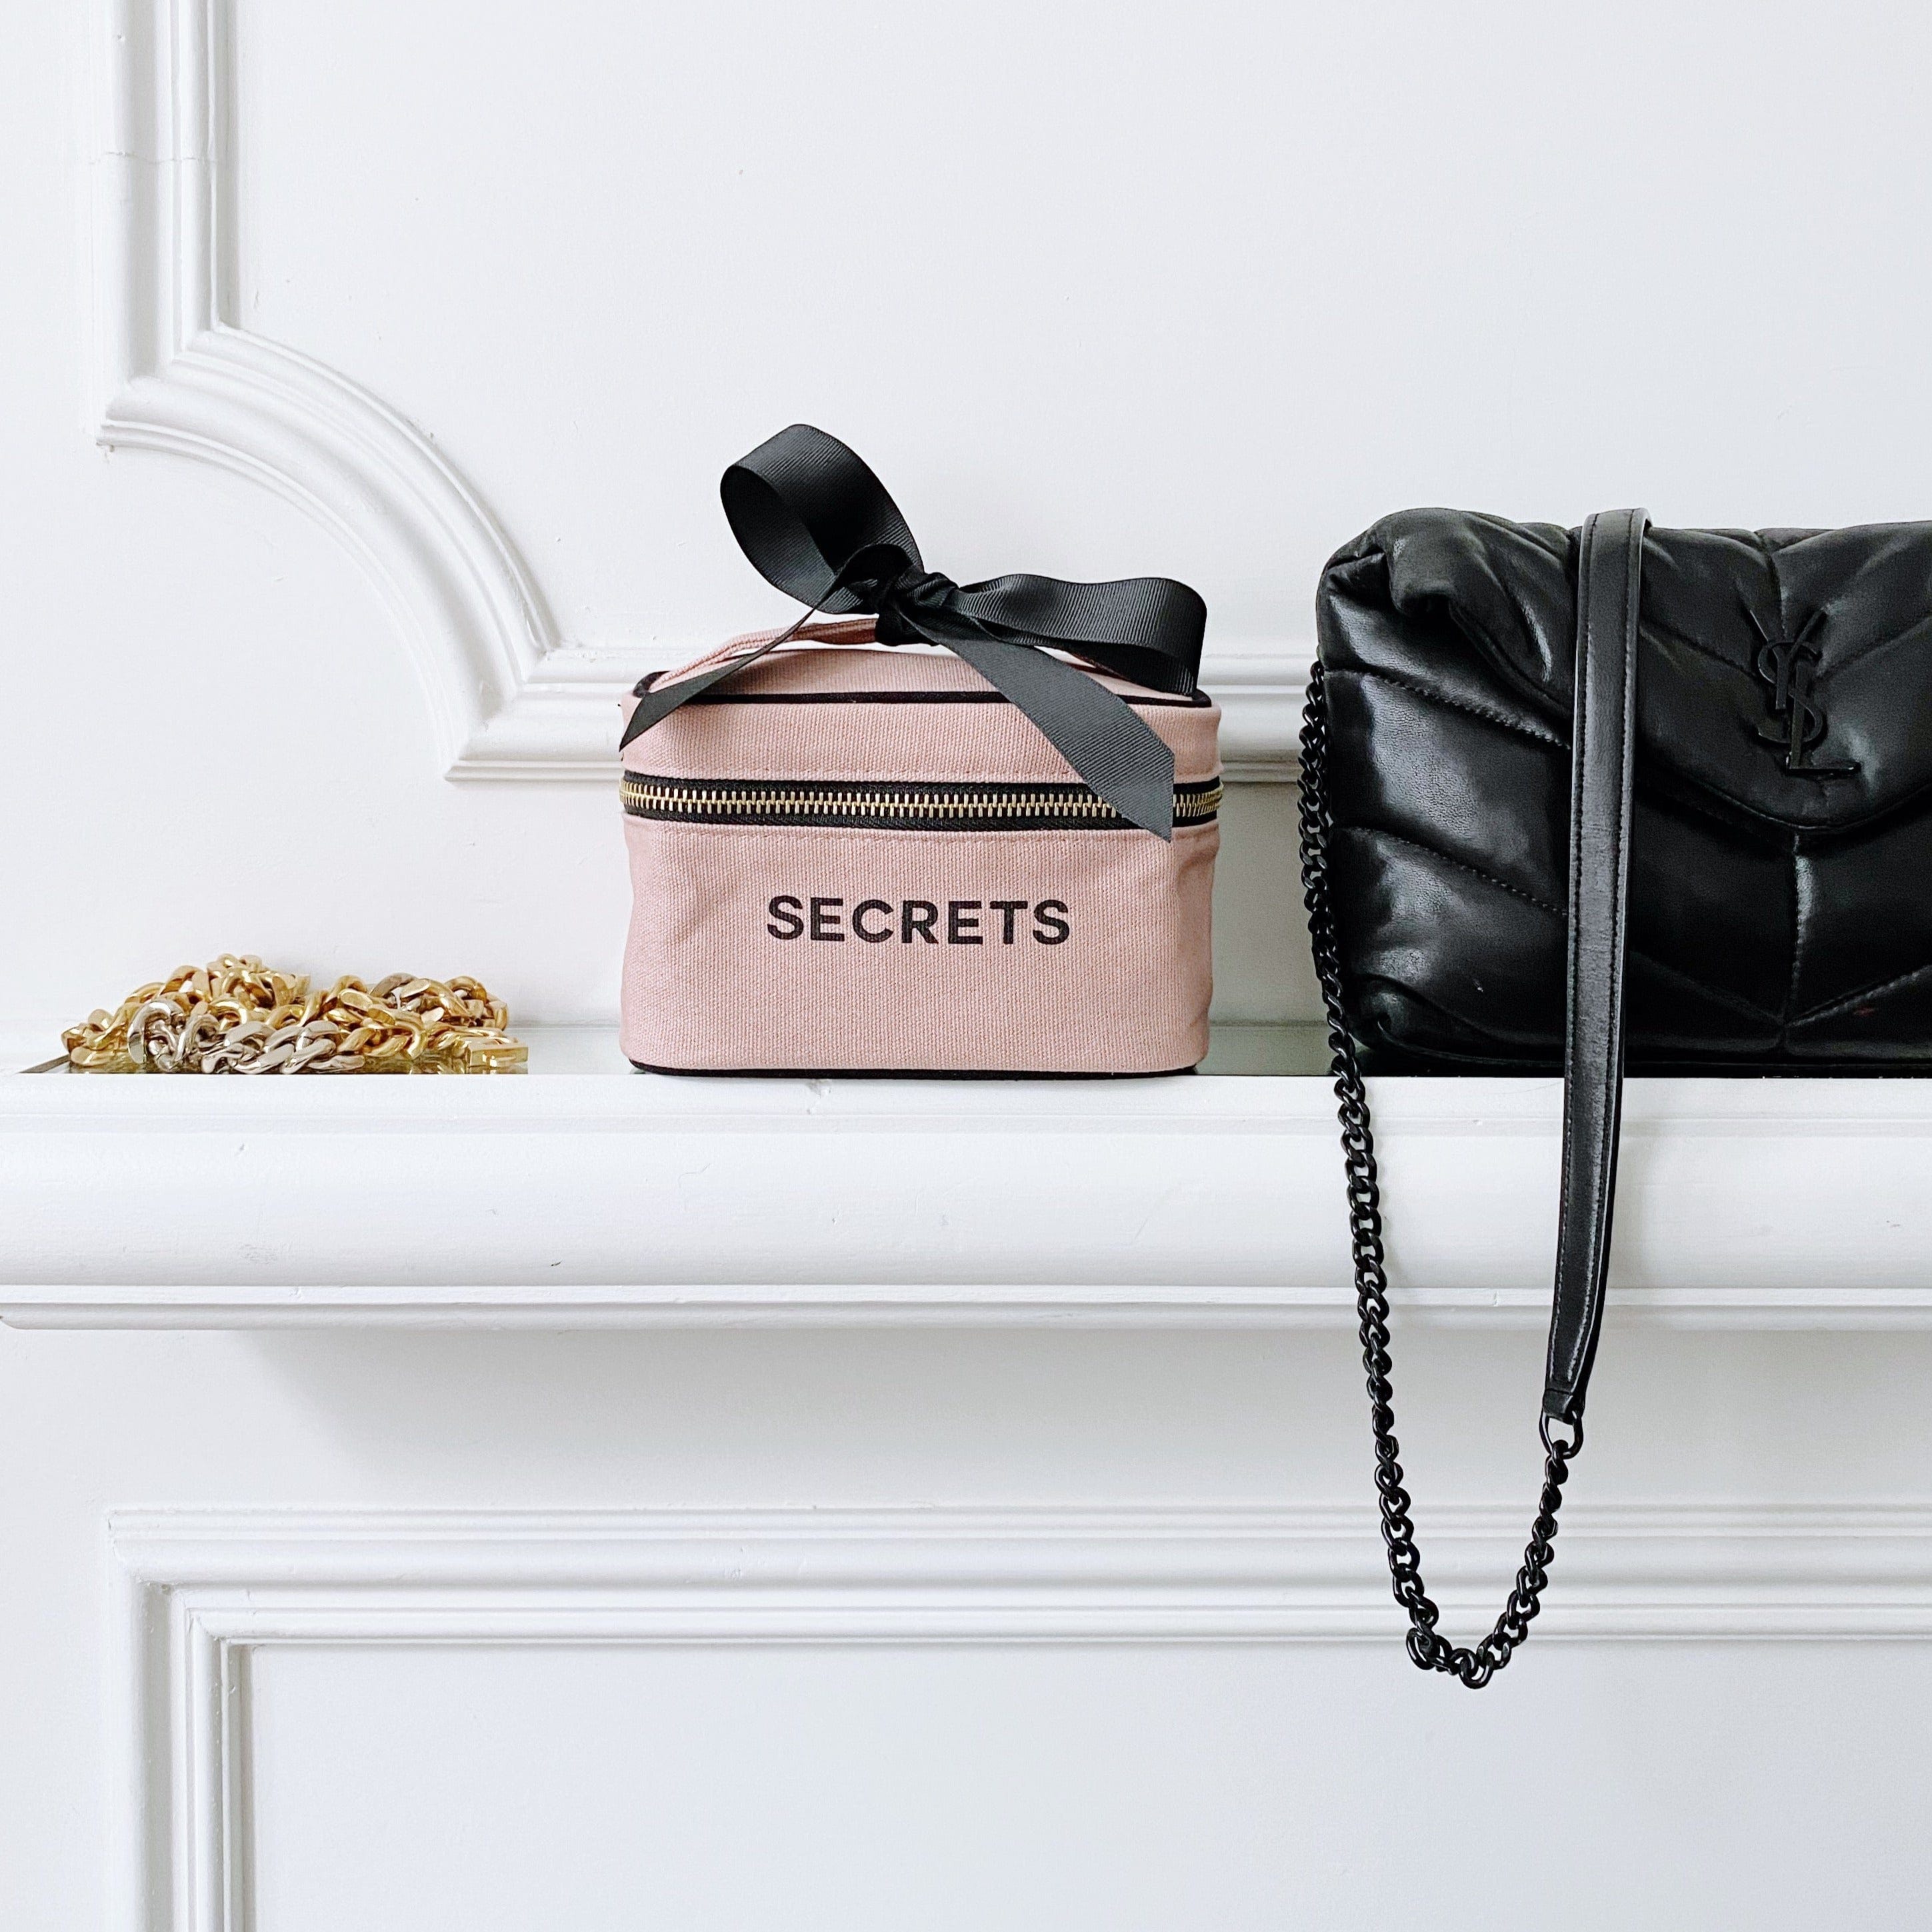 Mini Beauty Box for Secrets, Pink - Bag-all